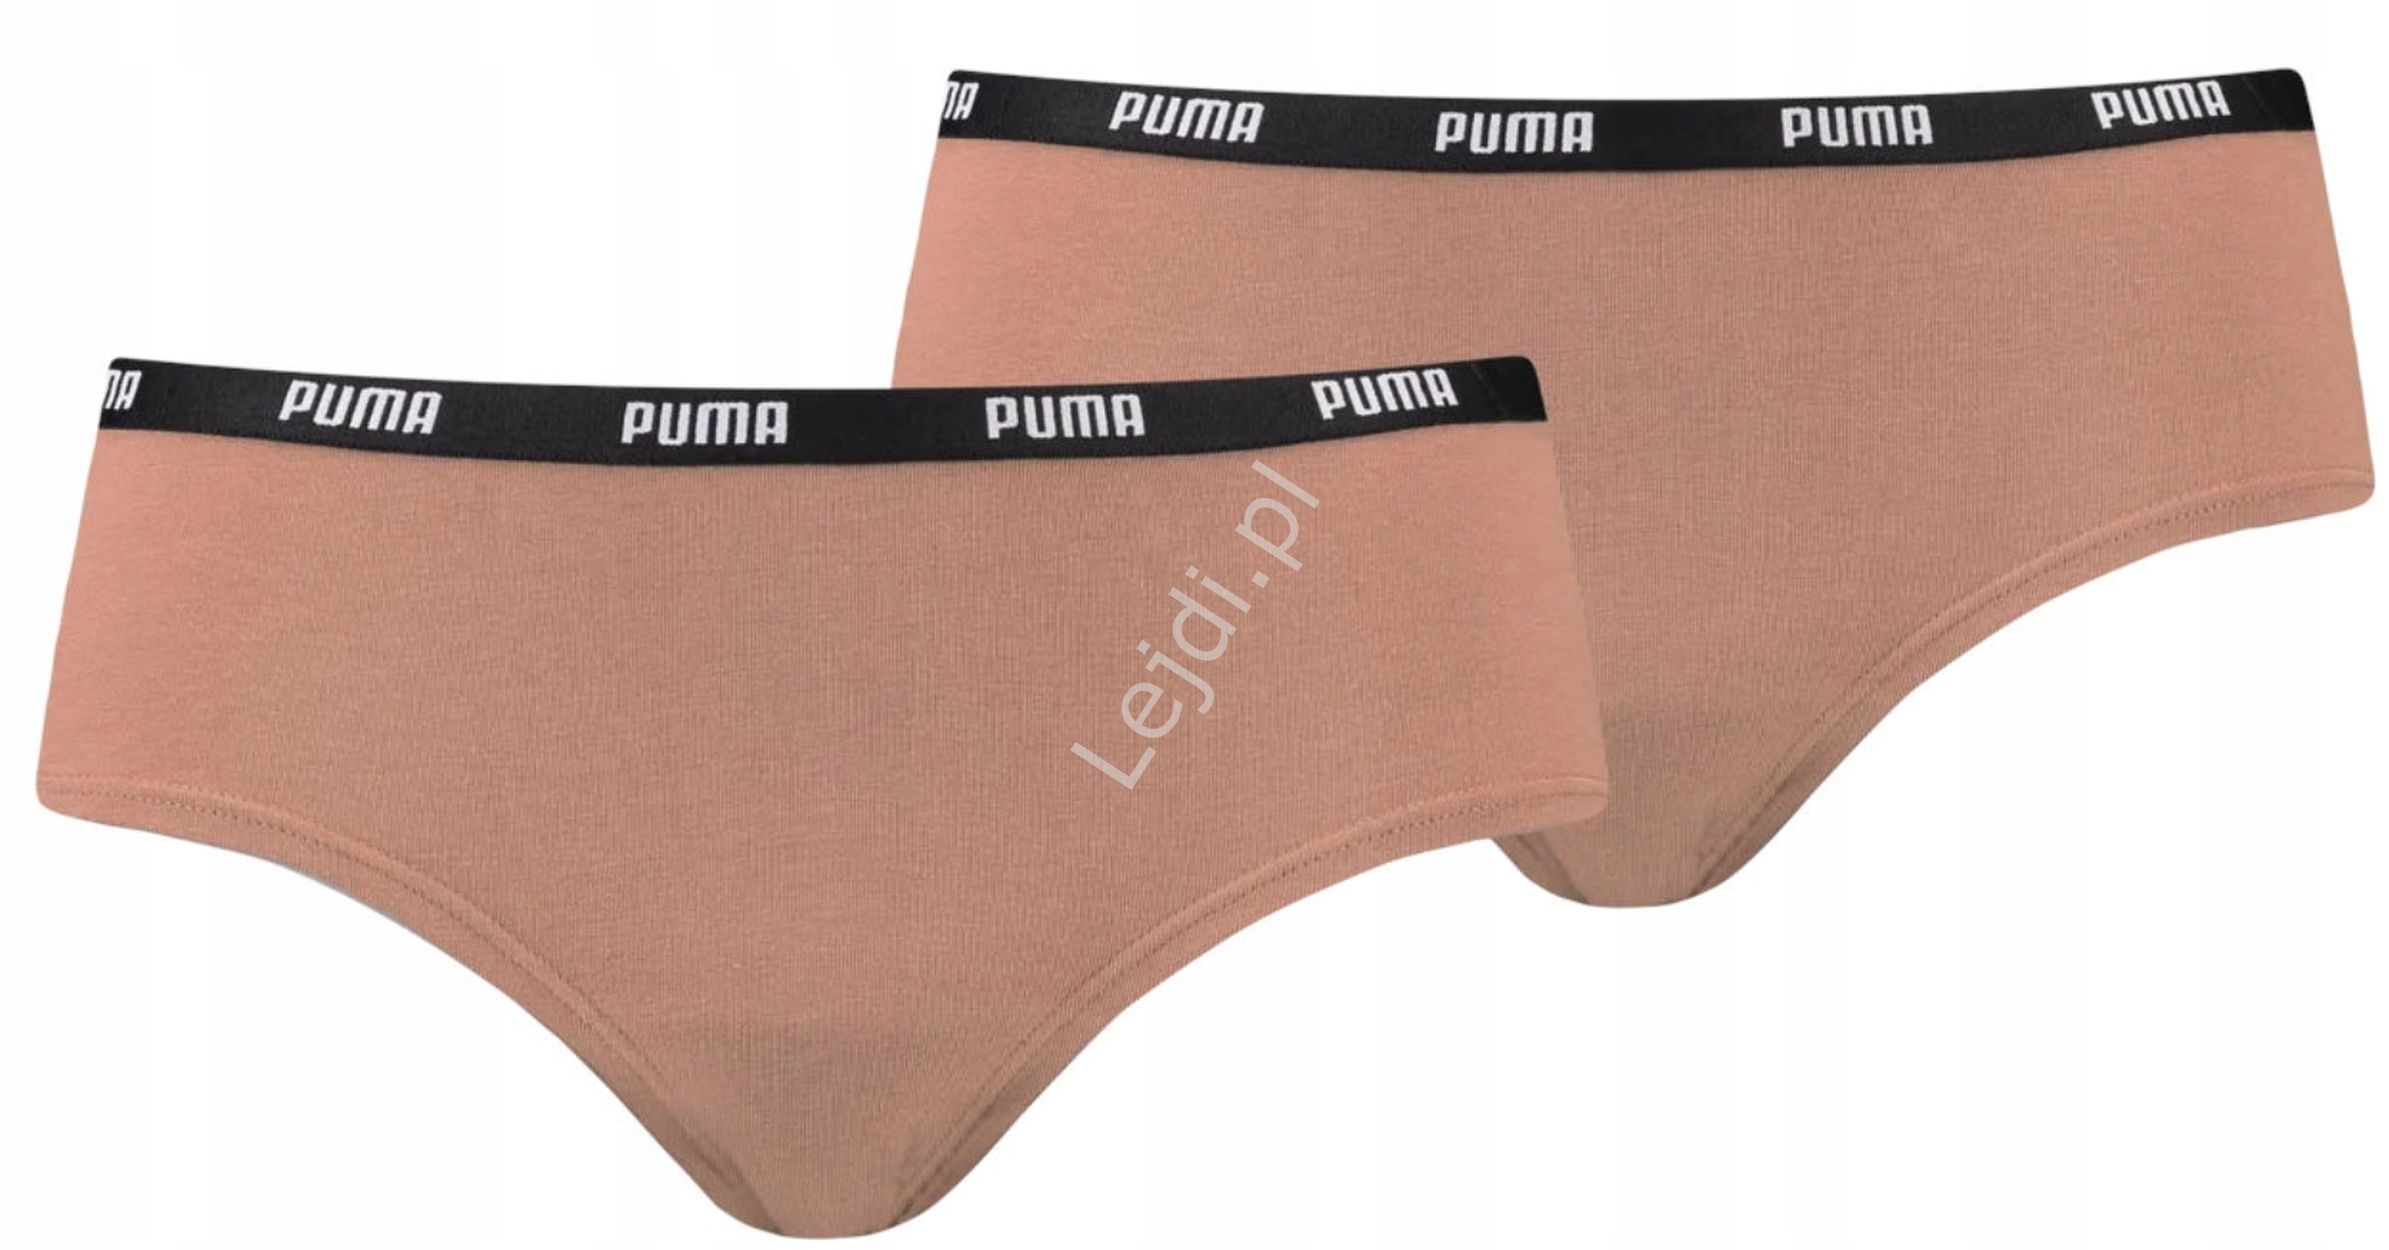 Image of Puma majtki damskie dwupak, 2x majtki hipsters w kolorze karmelowym